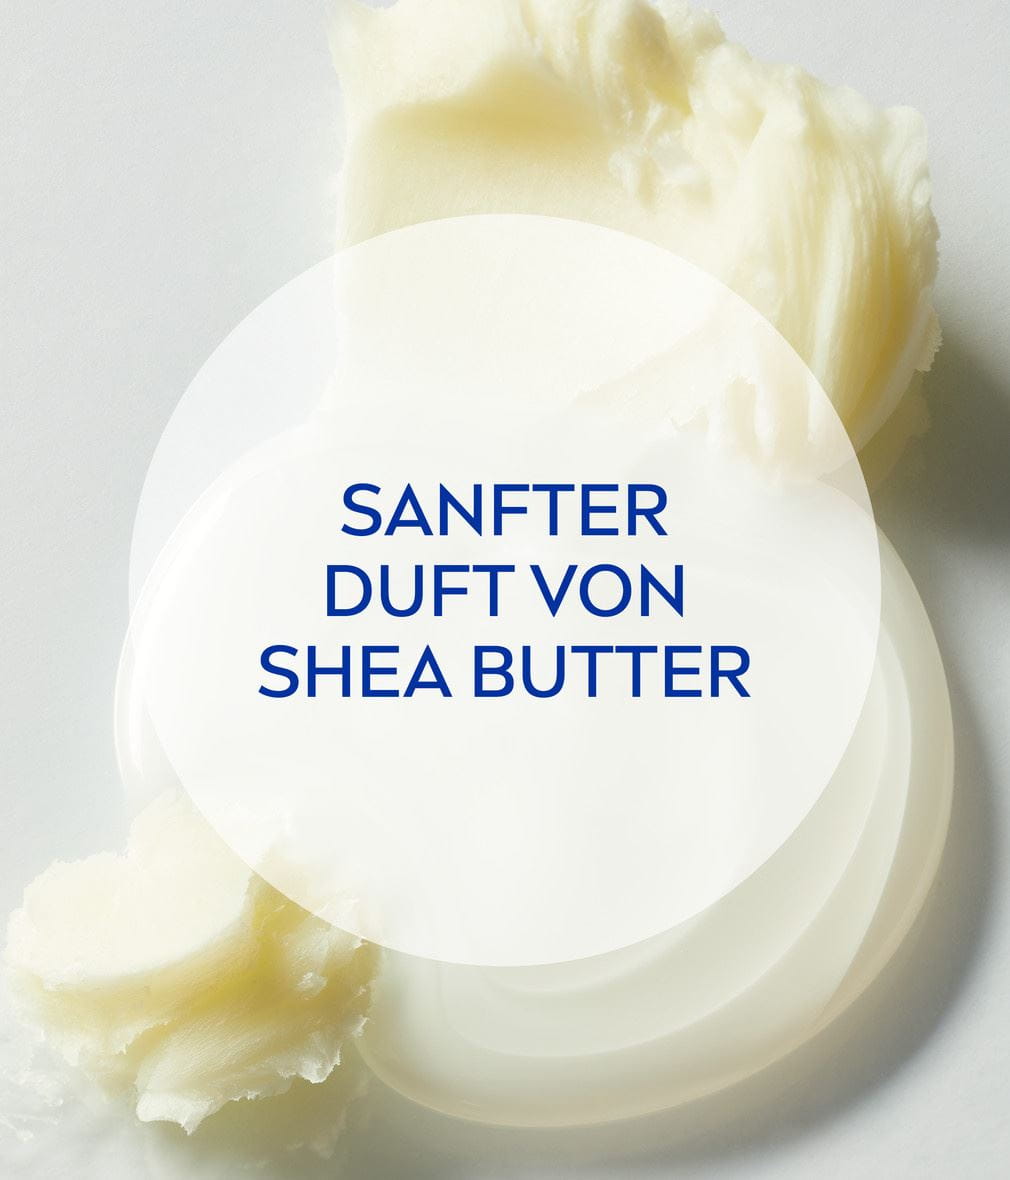 NIVEA Pflegedusche winter moment Shea Butter Inhaltsstoffe verleihen sanften Duft von Shea Butter